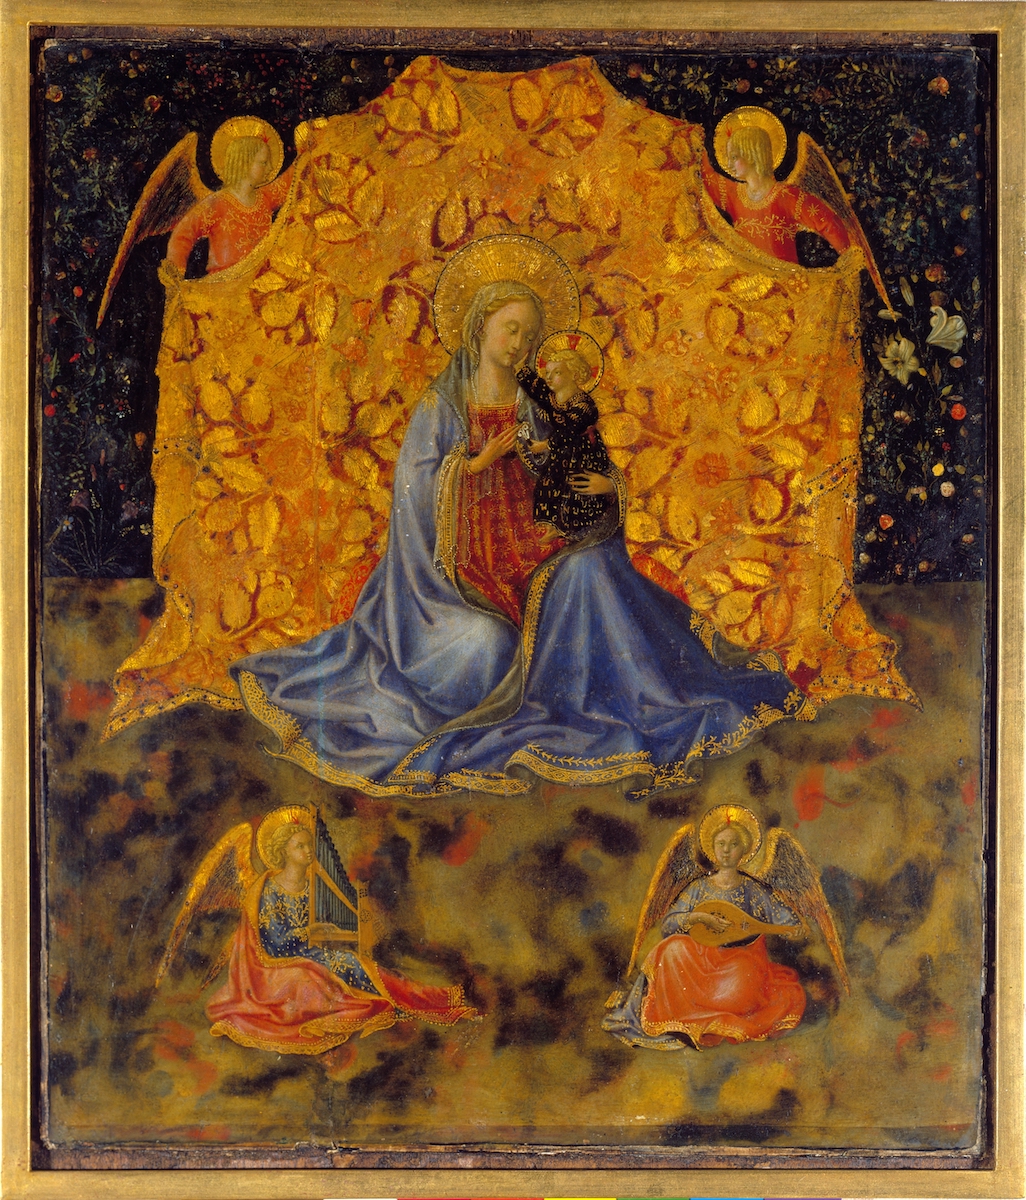 Benozzo Gozzoli, The Madonna with Child and Angels, c. 1449-1450. Fondazione Accademia Carrara, Bergamo